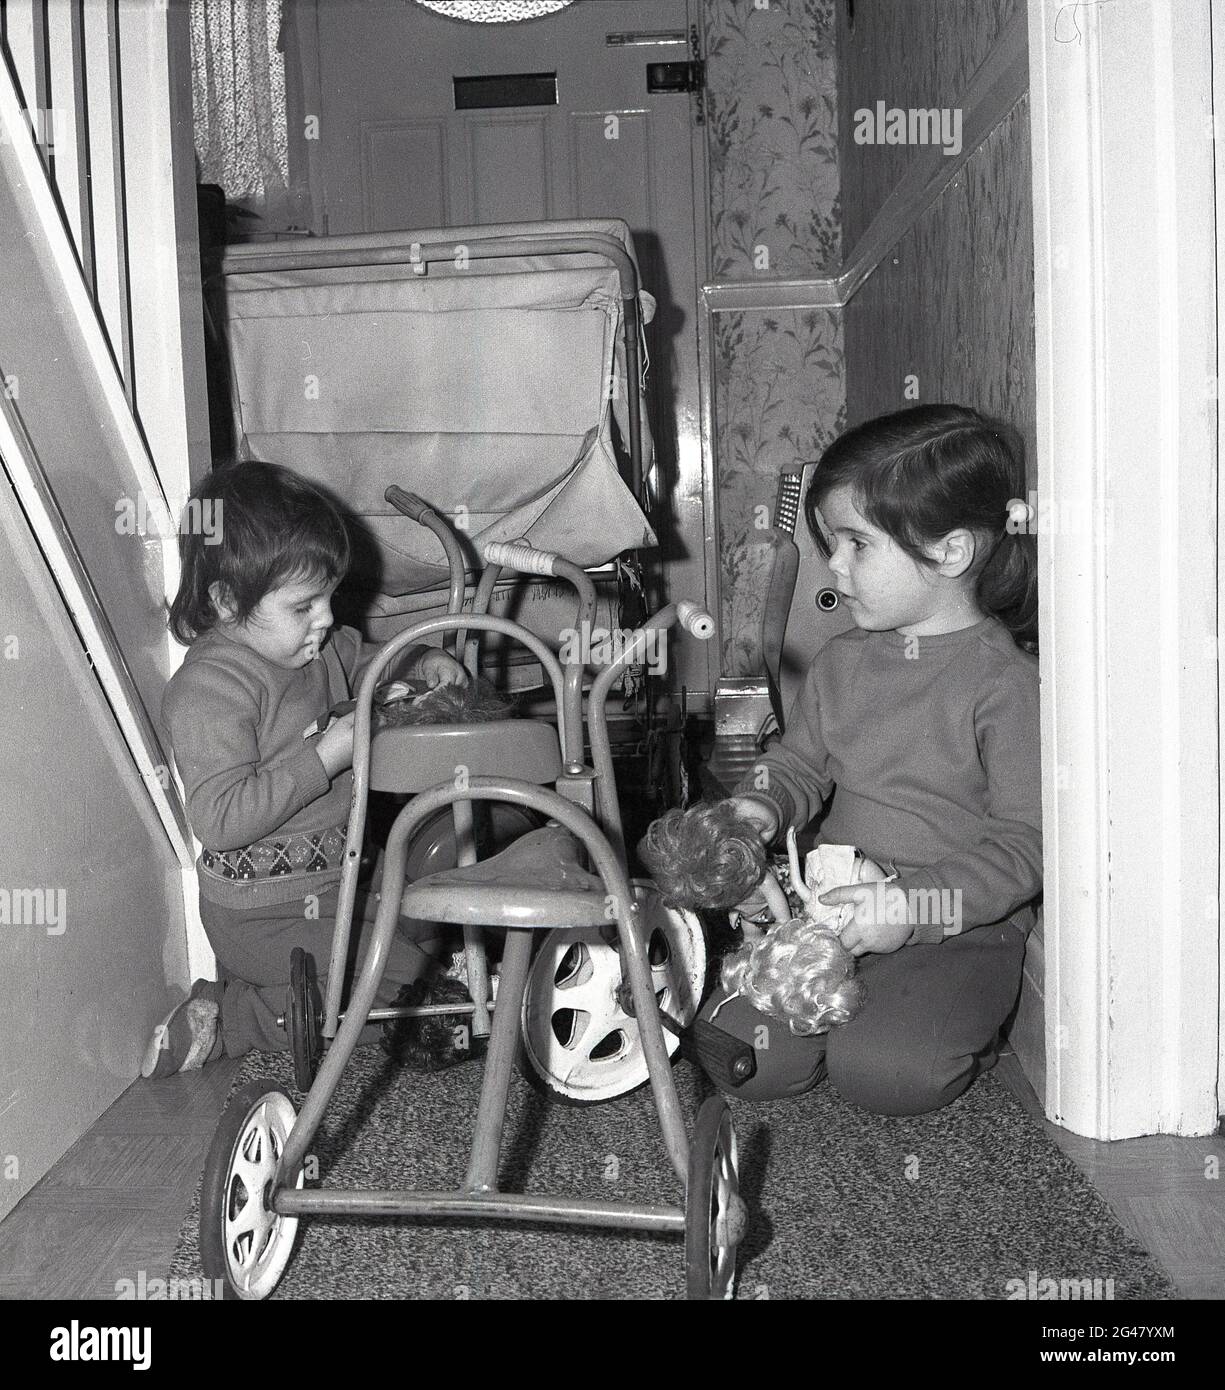 Années 1960, historique, à l'intérieur du couloir d'une maison mitoyenne, surpeuplée d'un landau et de tricycles métalliques pour enfants, deux petits enfants, pressés à côté des escaliers mur d'abd, agenouillé sur le sol, jouant avec des jouets et des poupées doux, Angleterre, Royaume-Uni. Banque D'Images